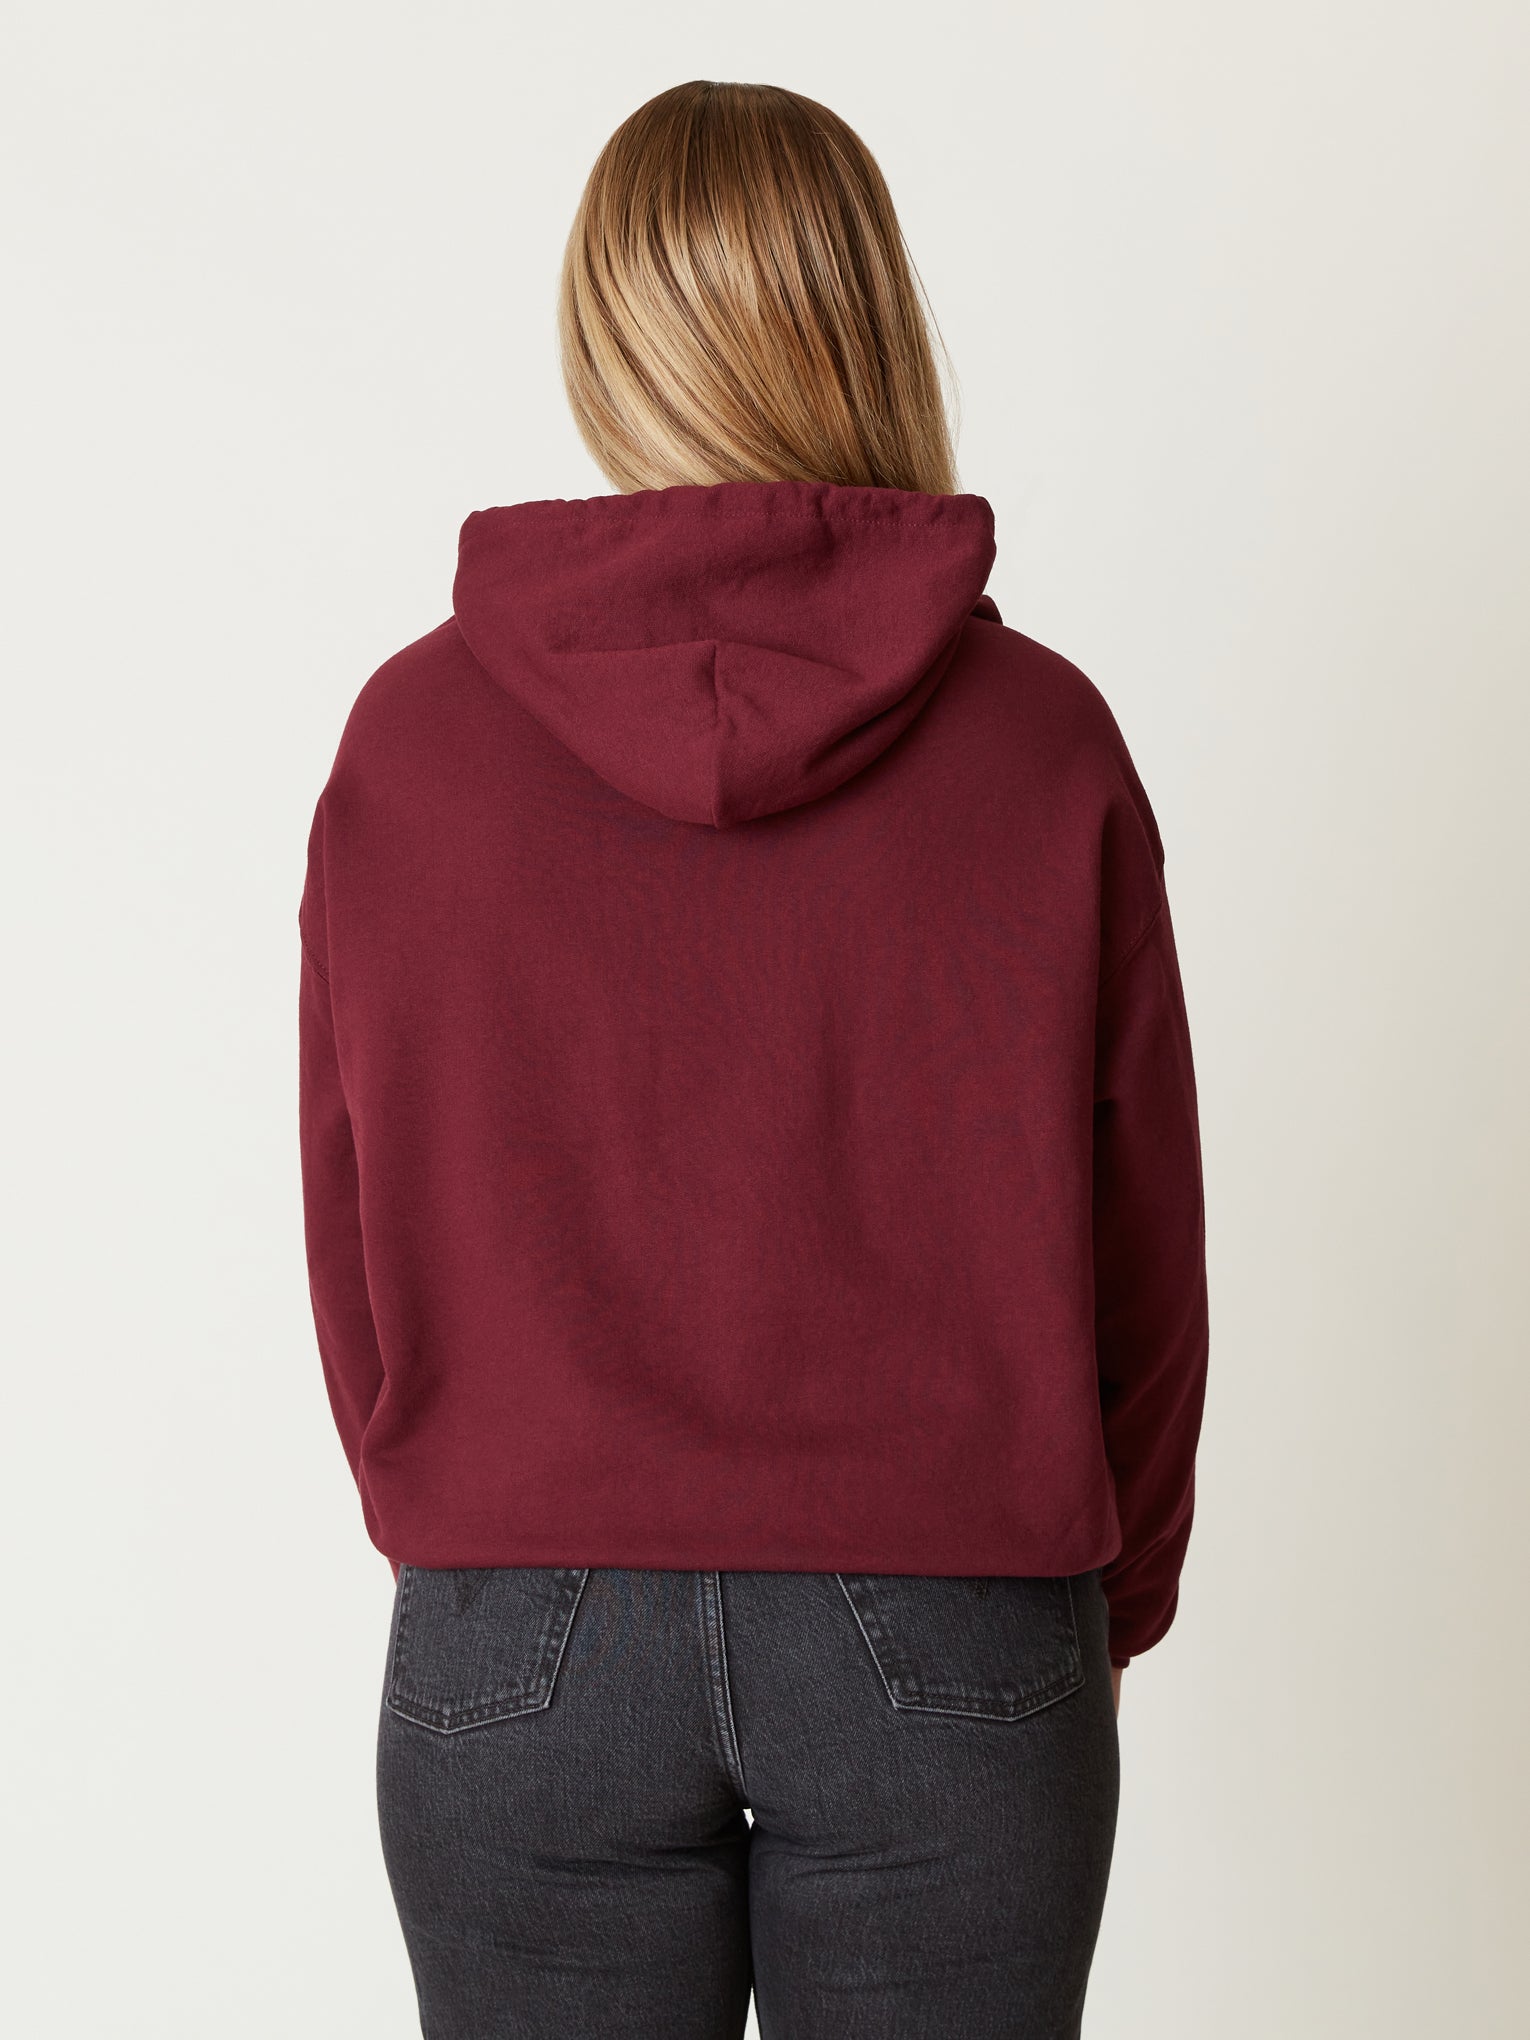 Harvard Hooded Arc Sweatshirt – The Harvard Shop